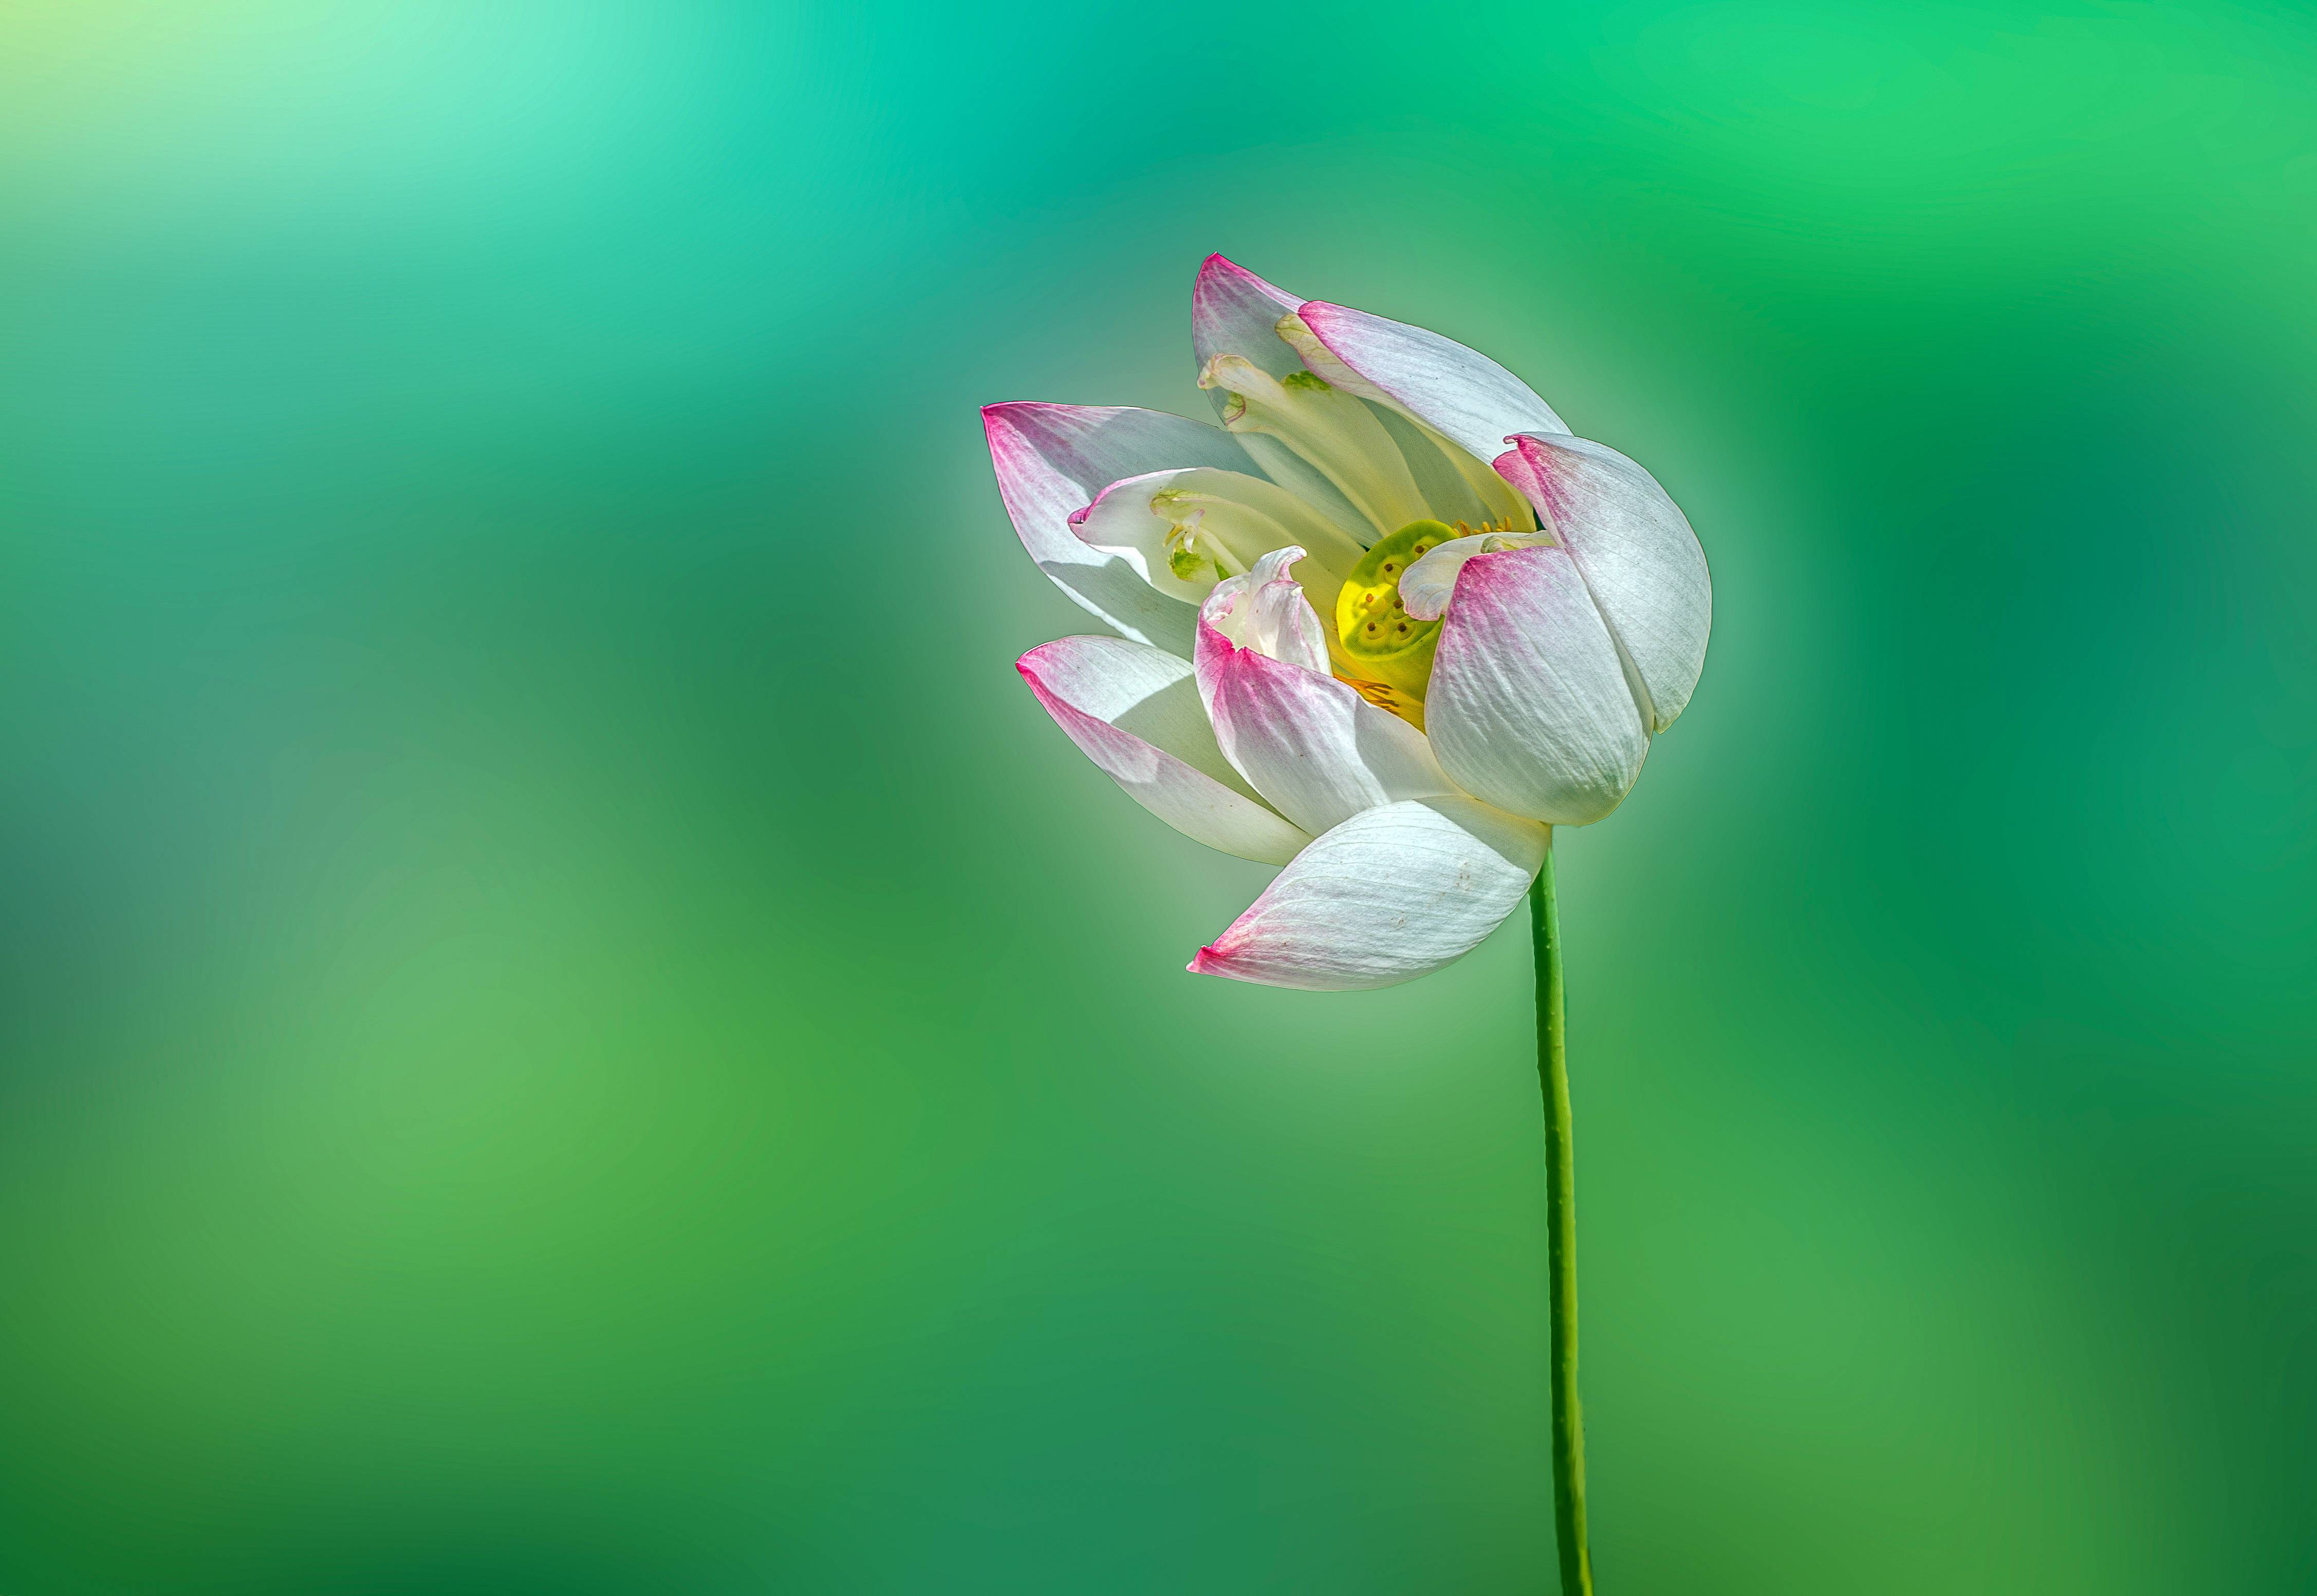 Фото Lotus flower ЛОТУС - бесплатные картинки на Fonwall